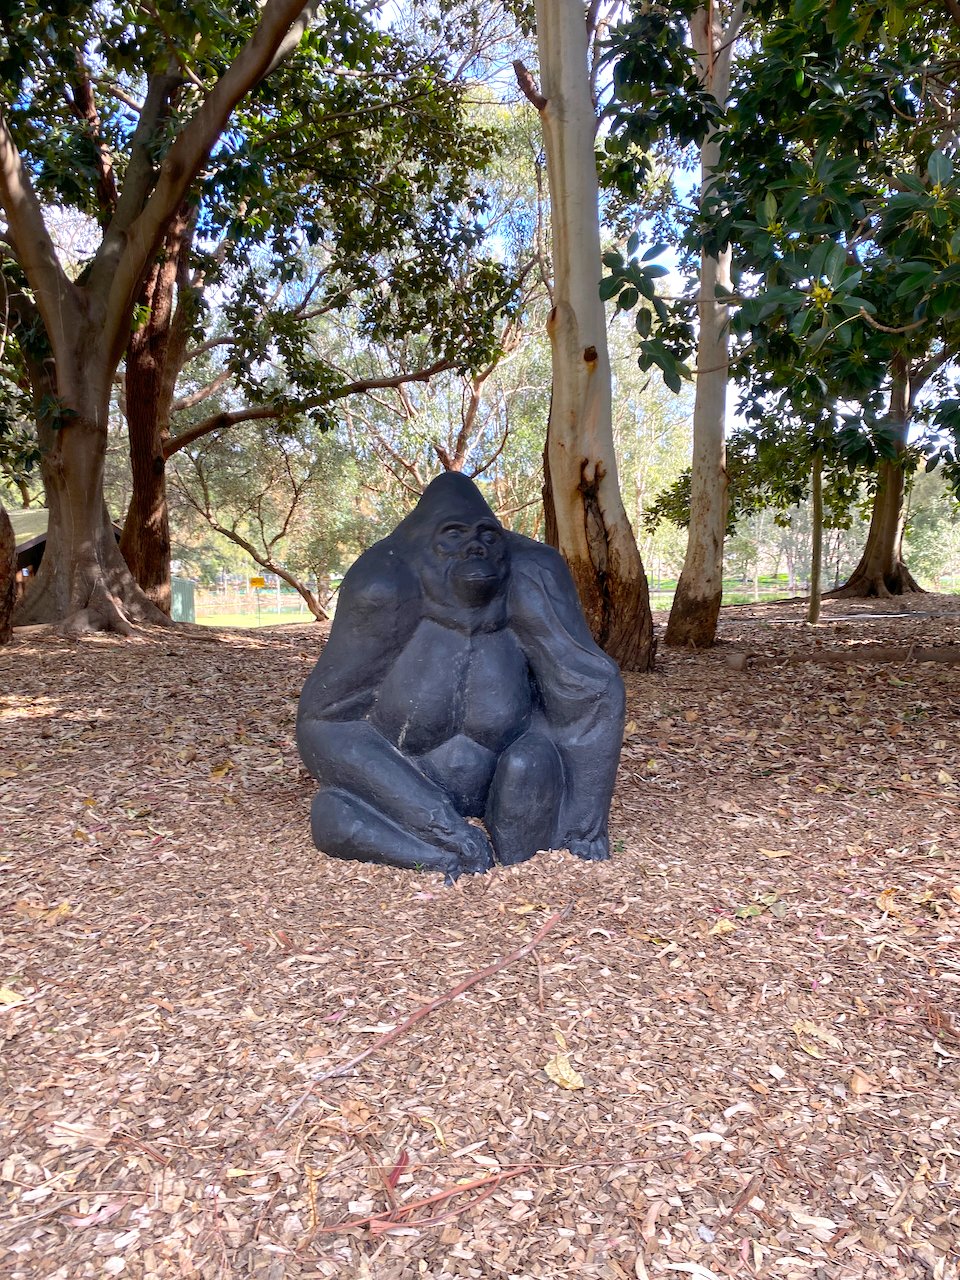 Gorilla statue in the Pleasure Gardens